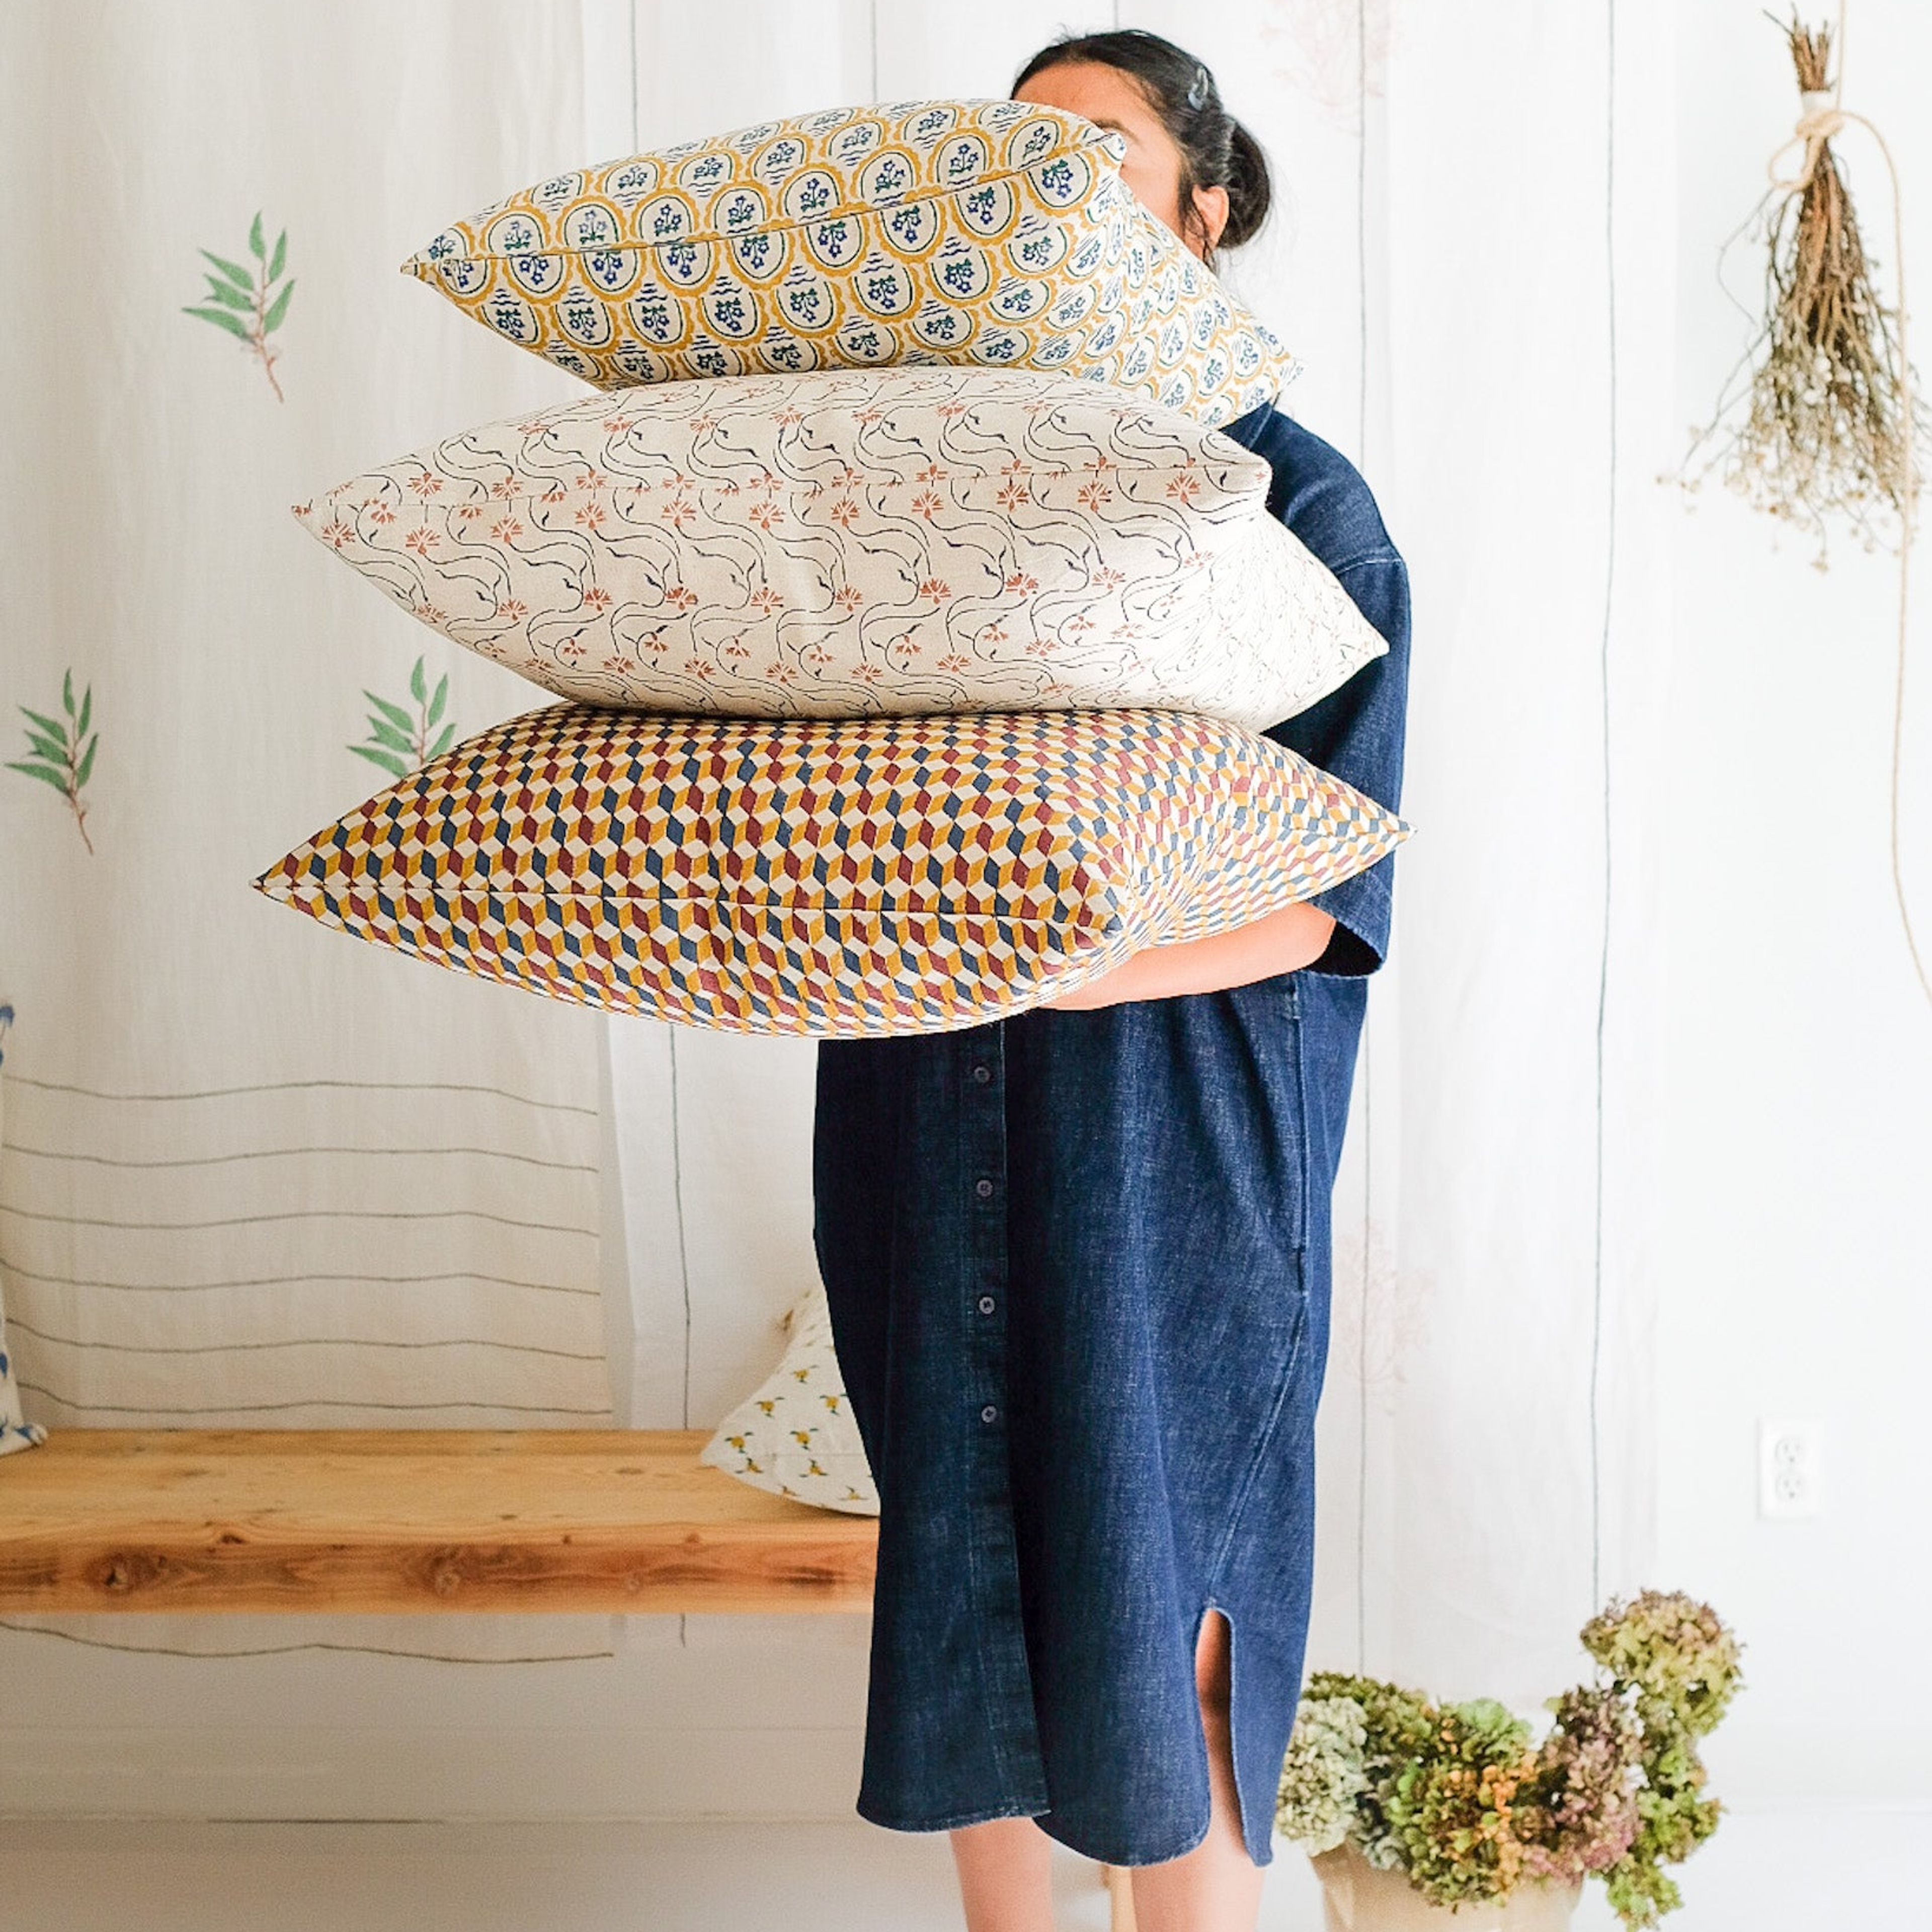 Saba - Hand Block-printed Linen Pillowcase